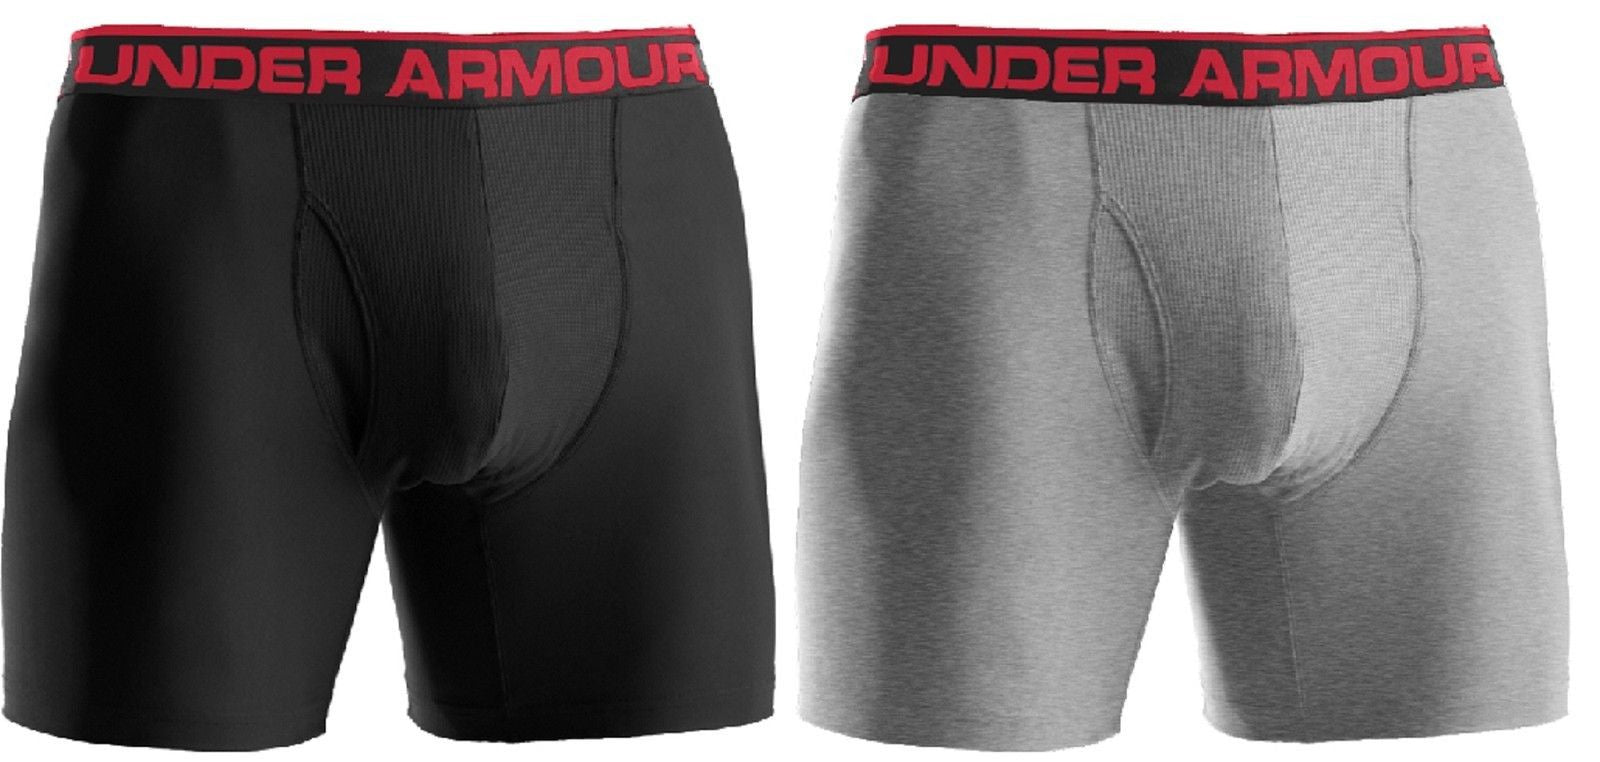 UNDER ARMOR 2-pack boxer shorts men's underpants underwear S-XL